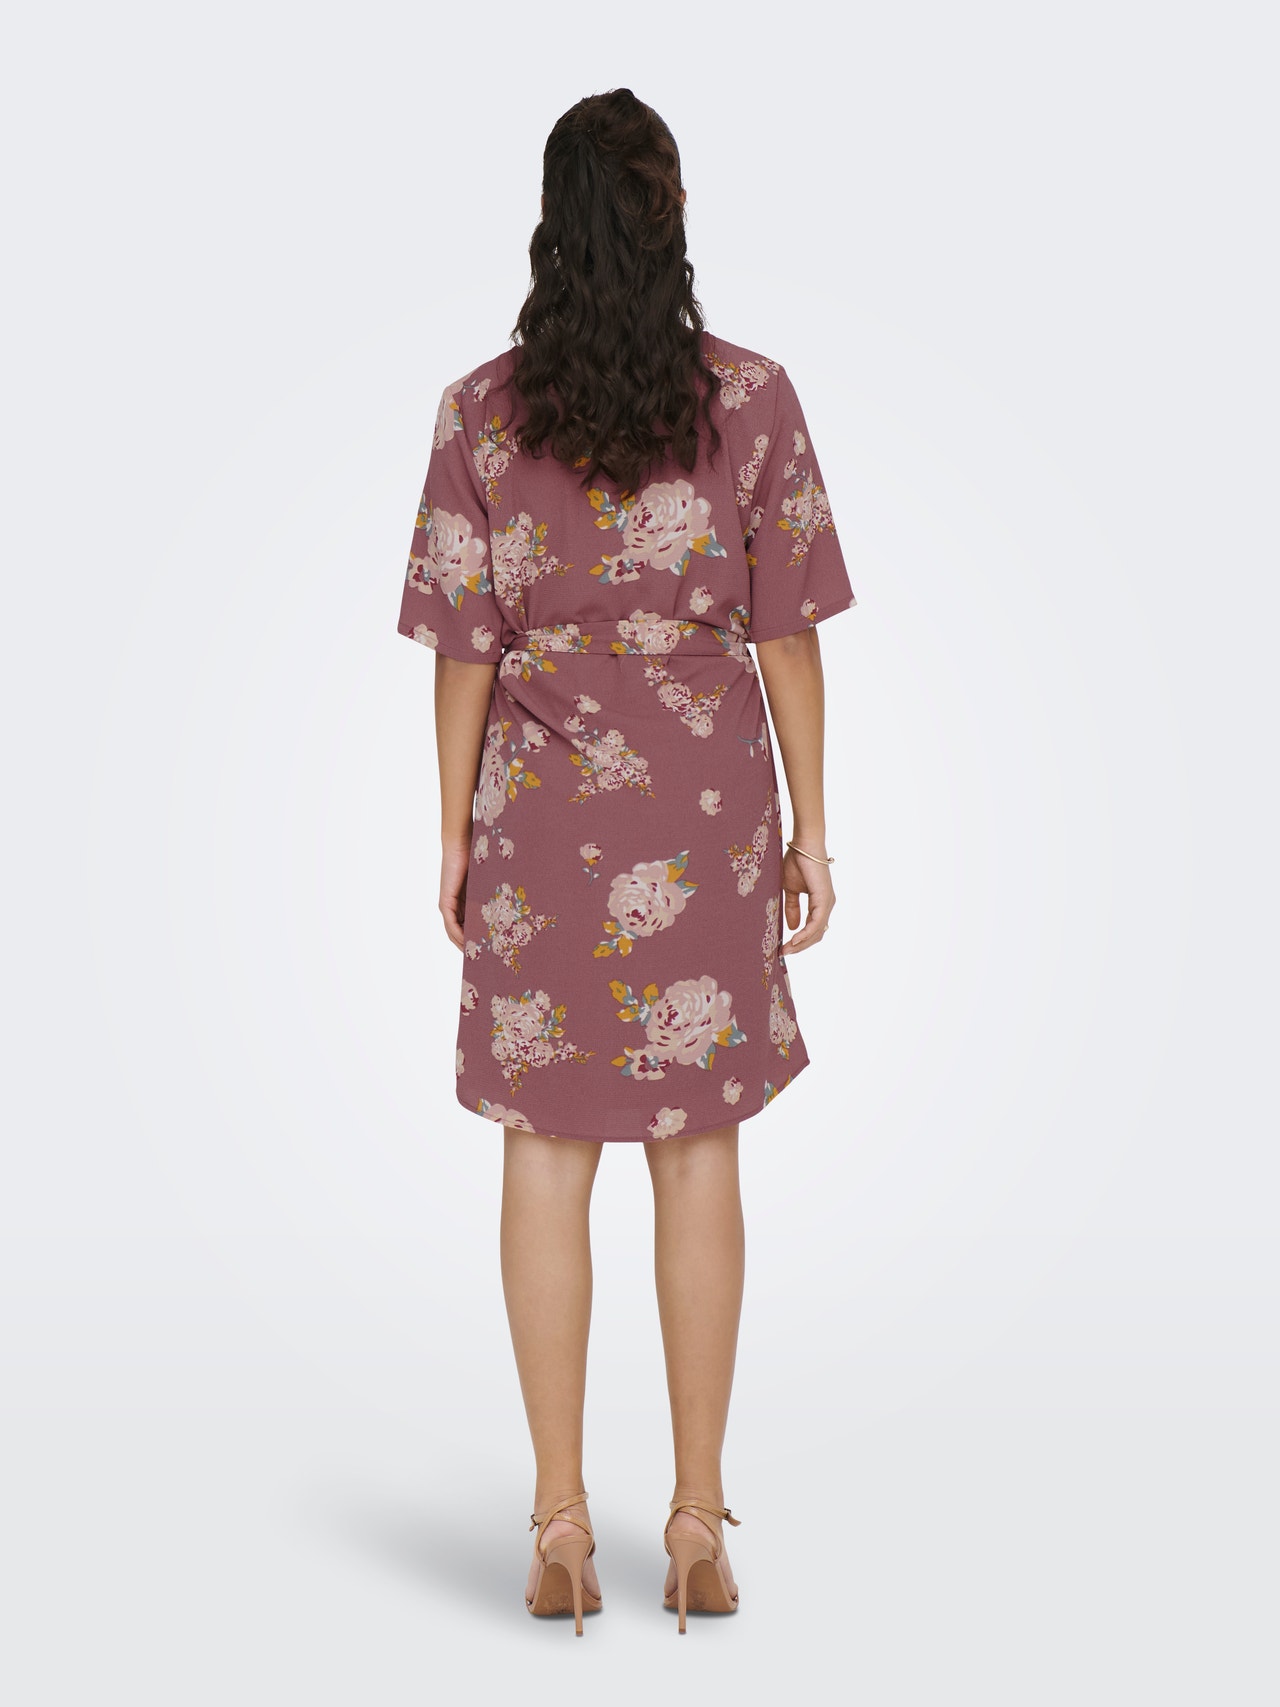 ONLY Mini Solid color Belt Dress -Rose Brown - 15190690